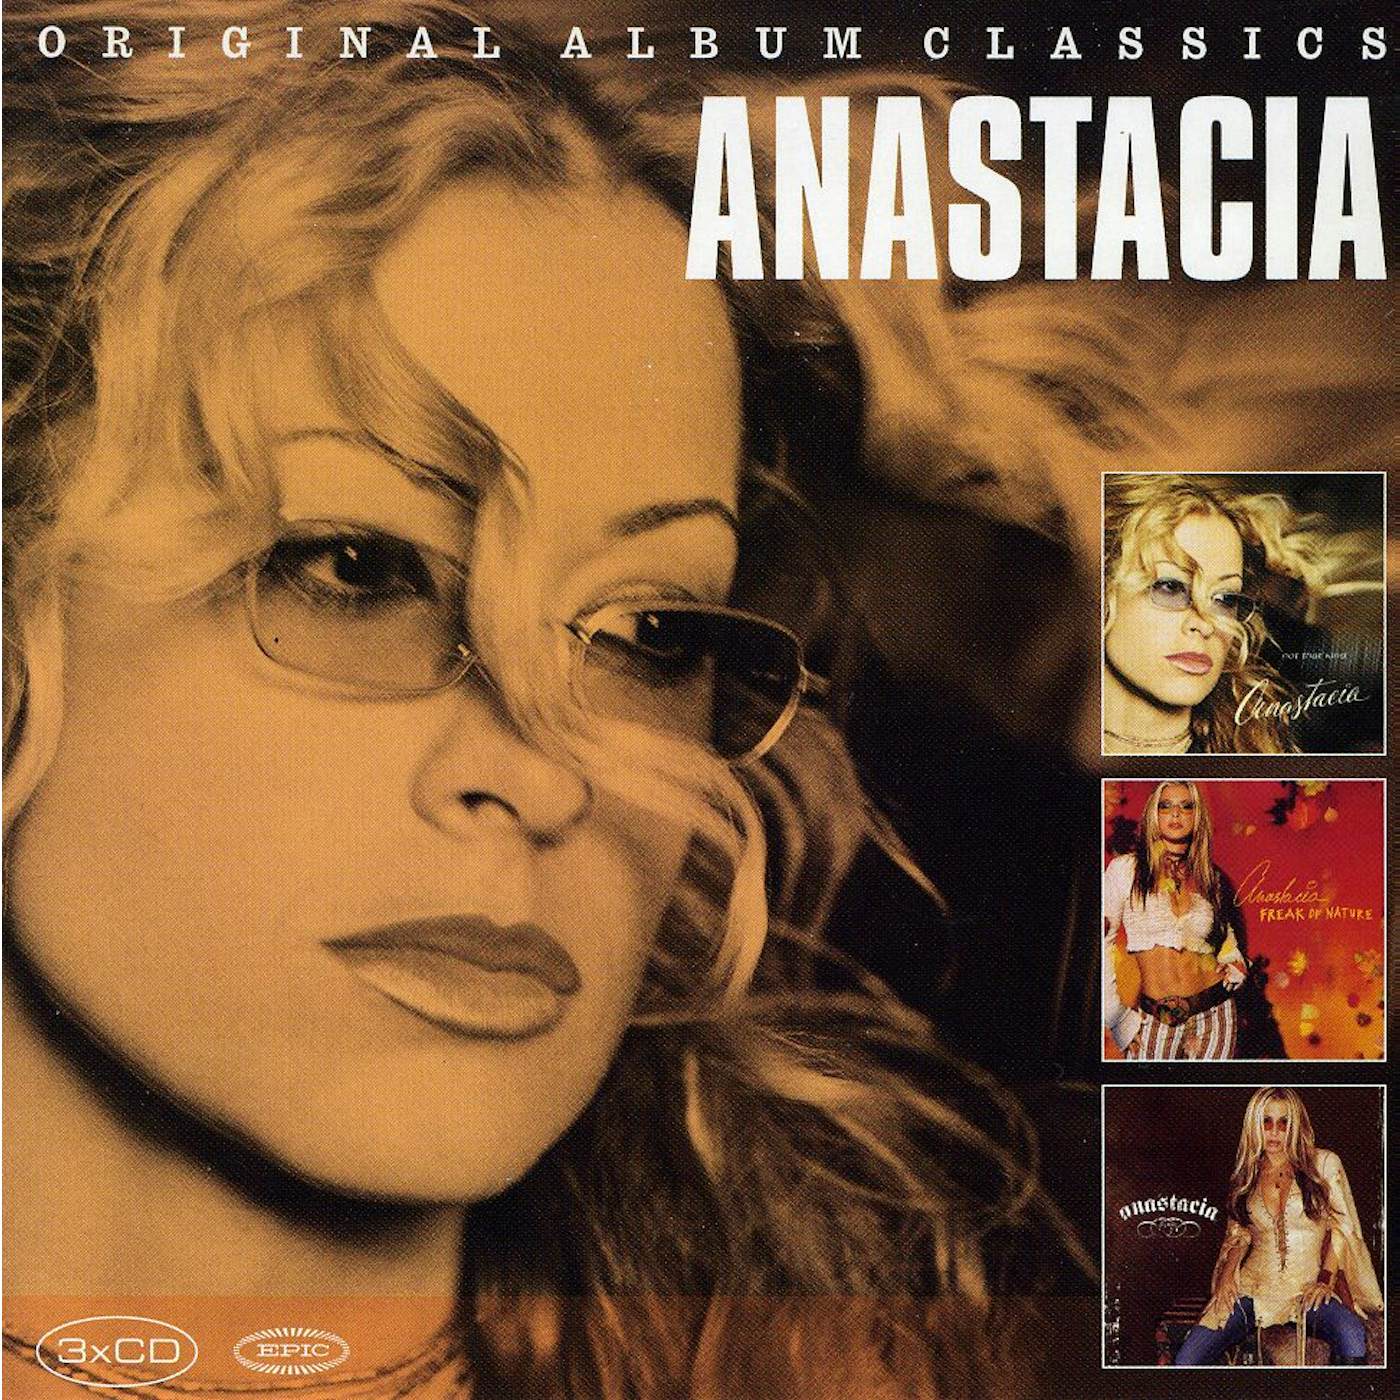 Anastacia ORIGINAL ALBUM CLASSICS CD